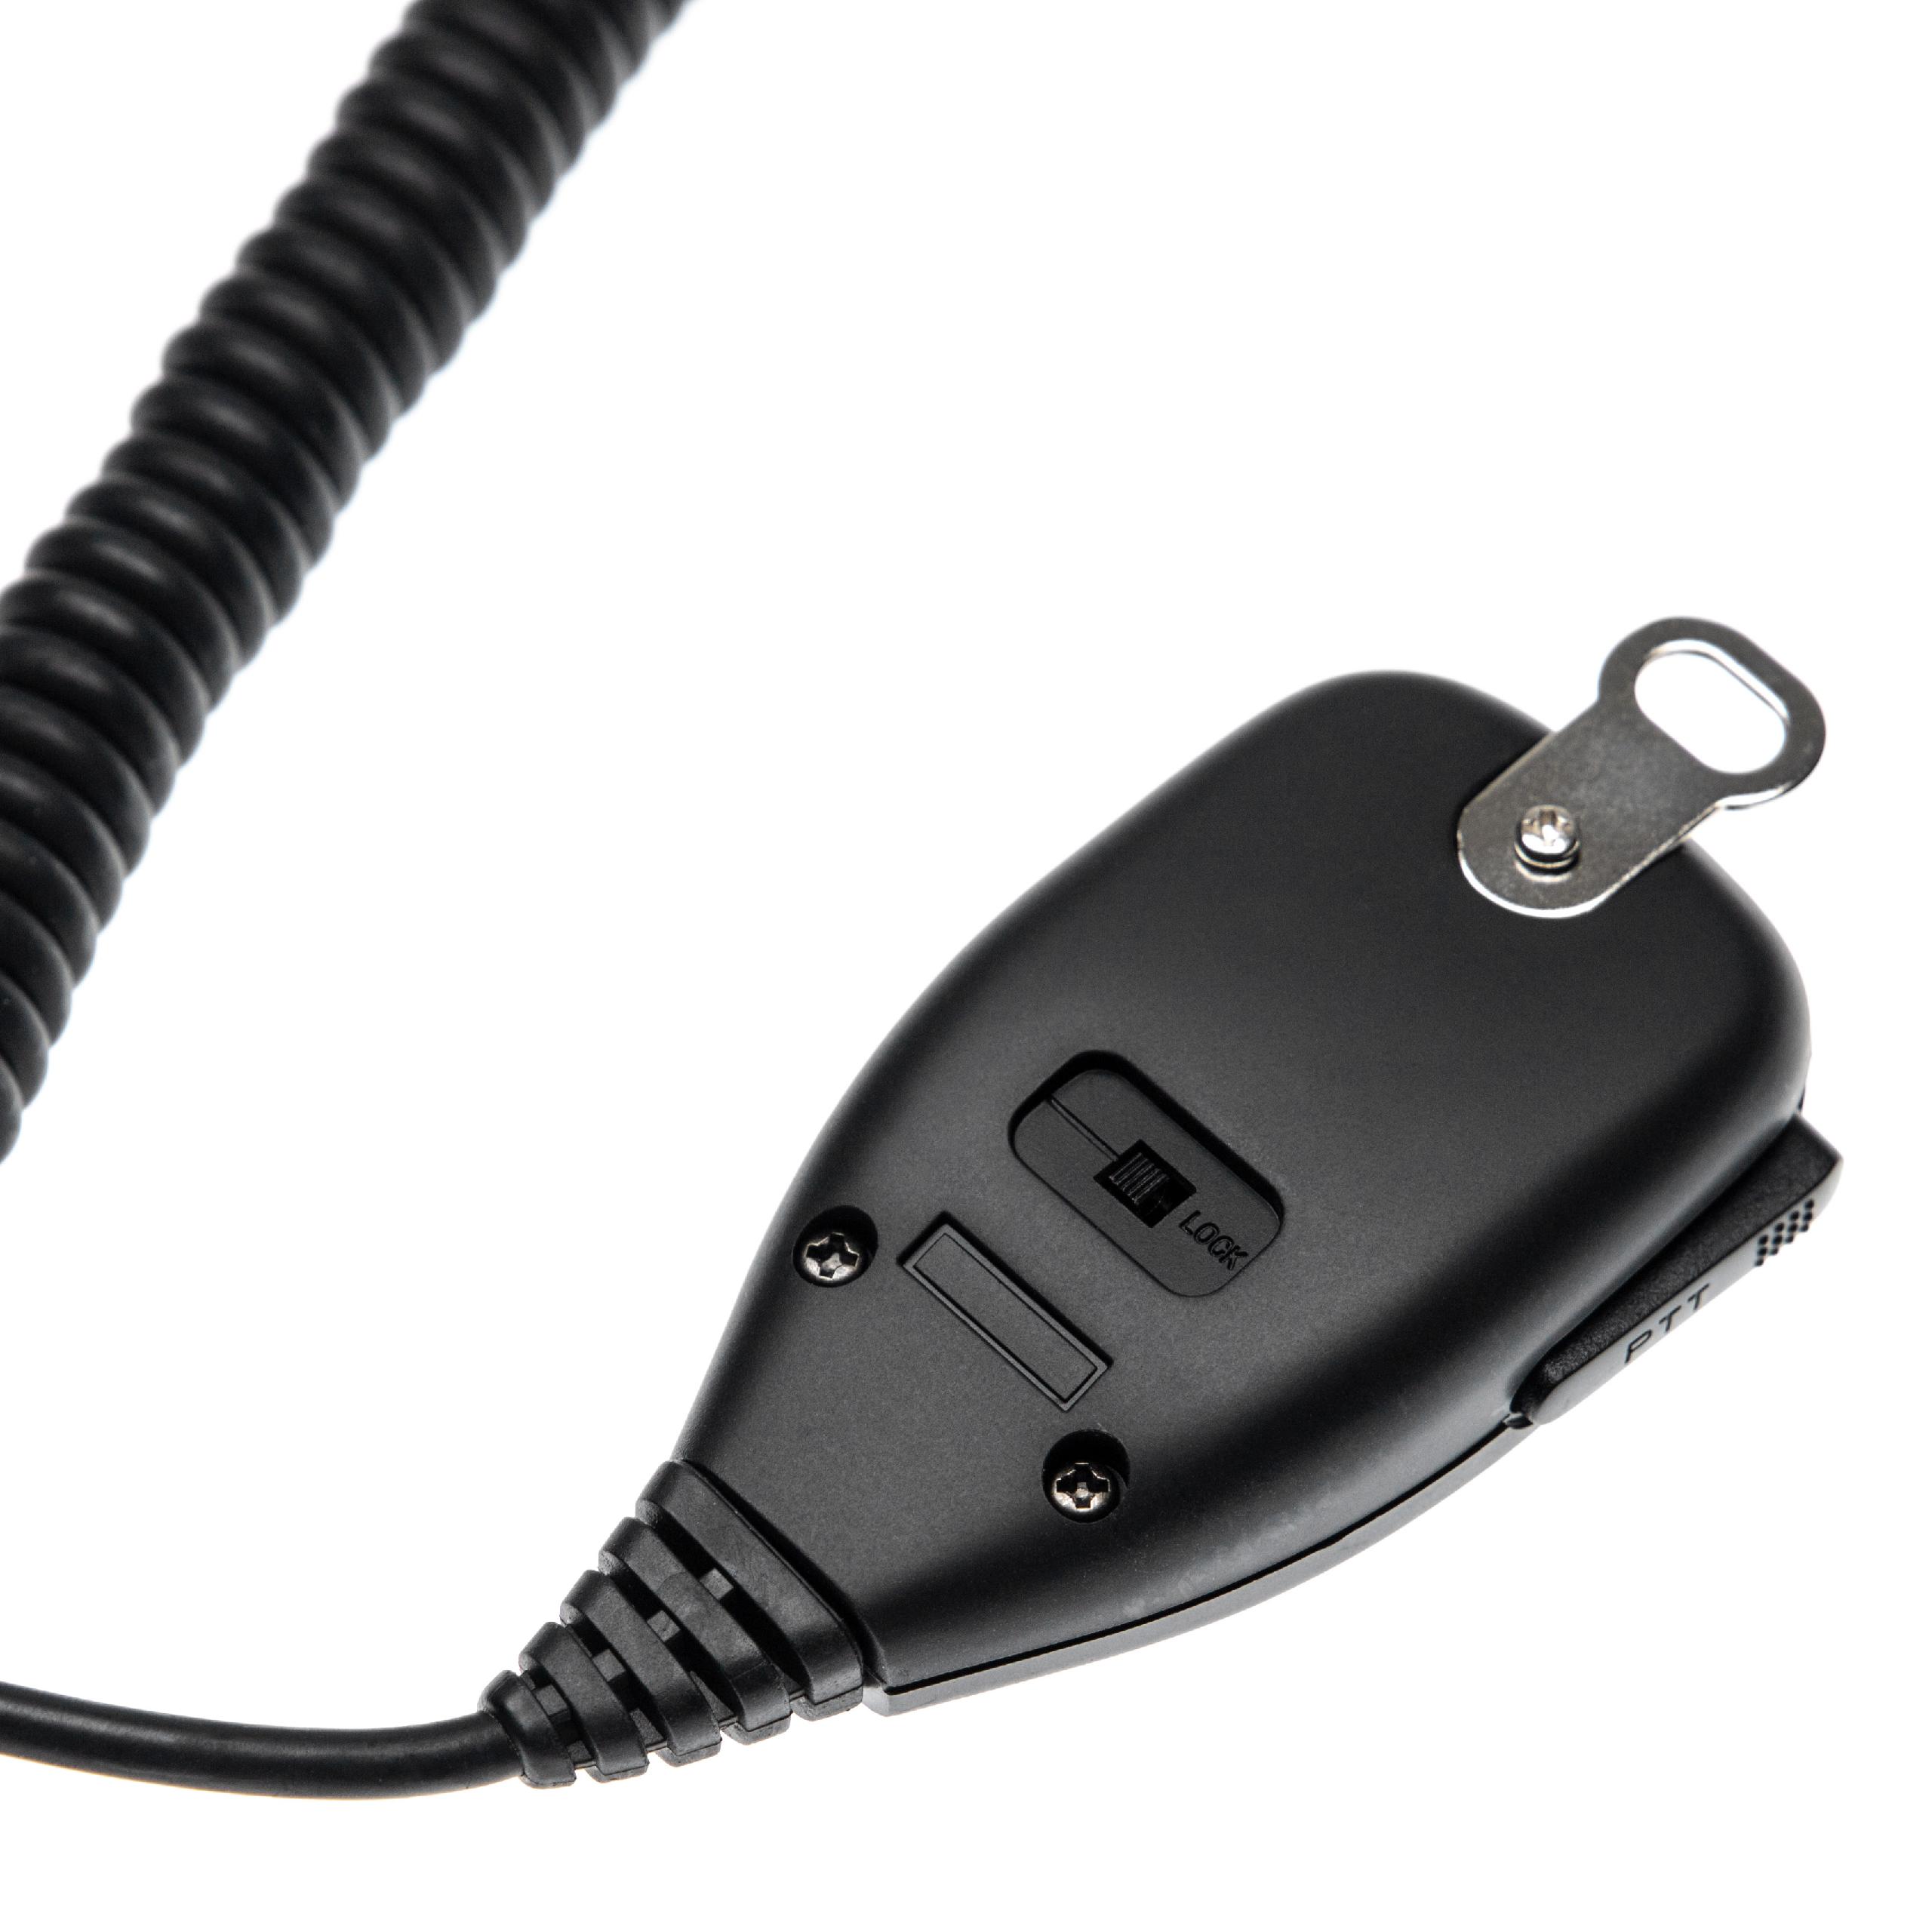 vhbw Speaker Microphone for Kenwood TK-7100 Walkie Talkie